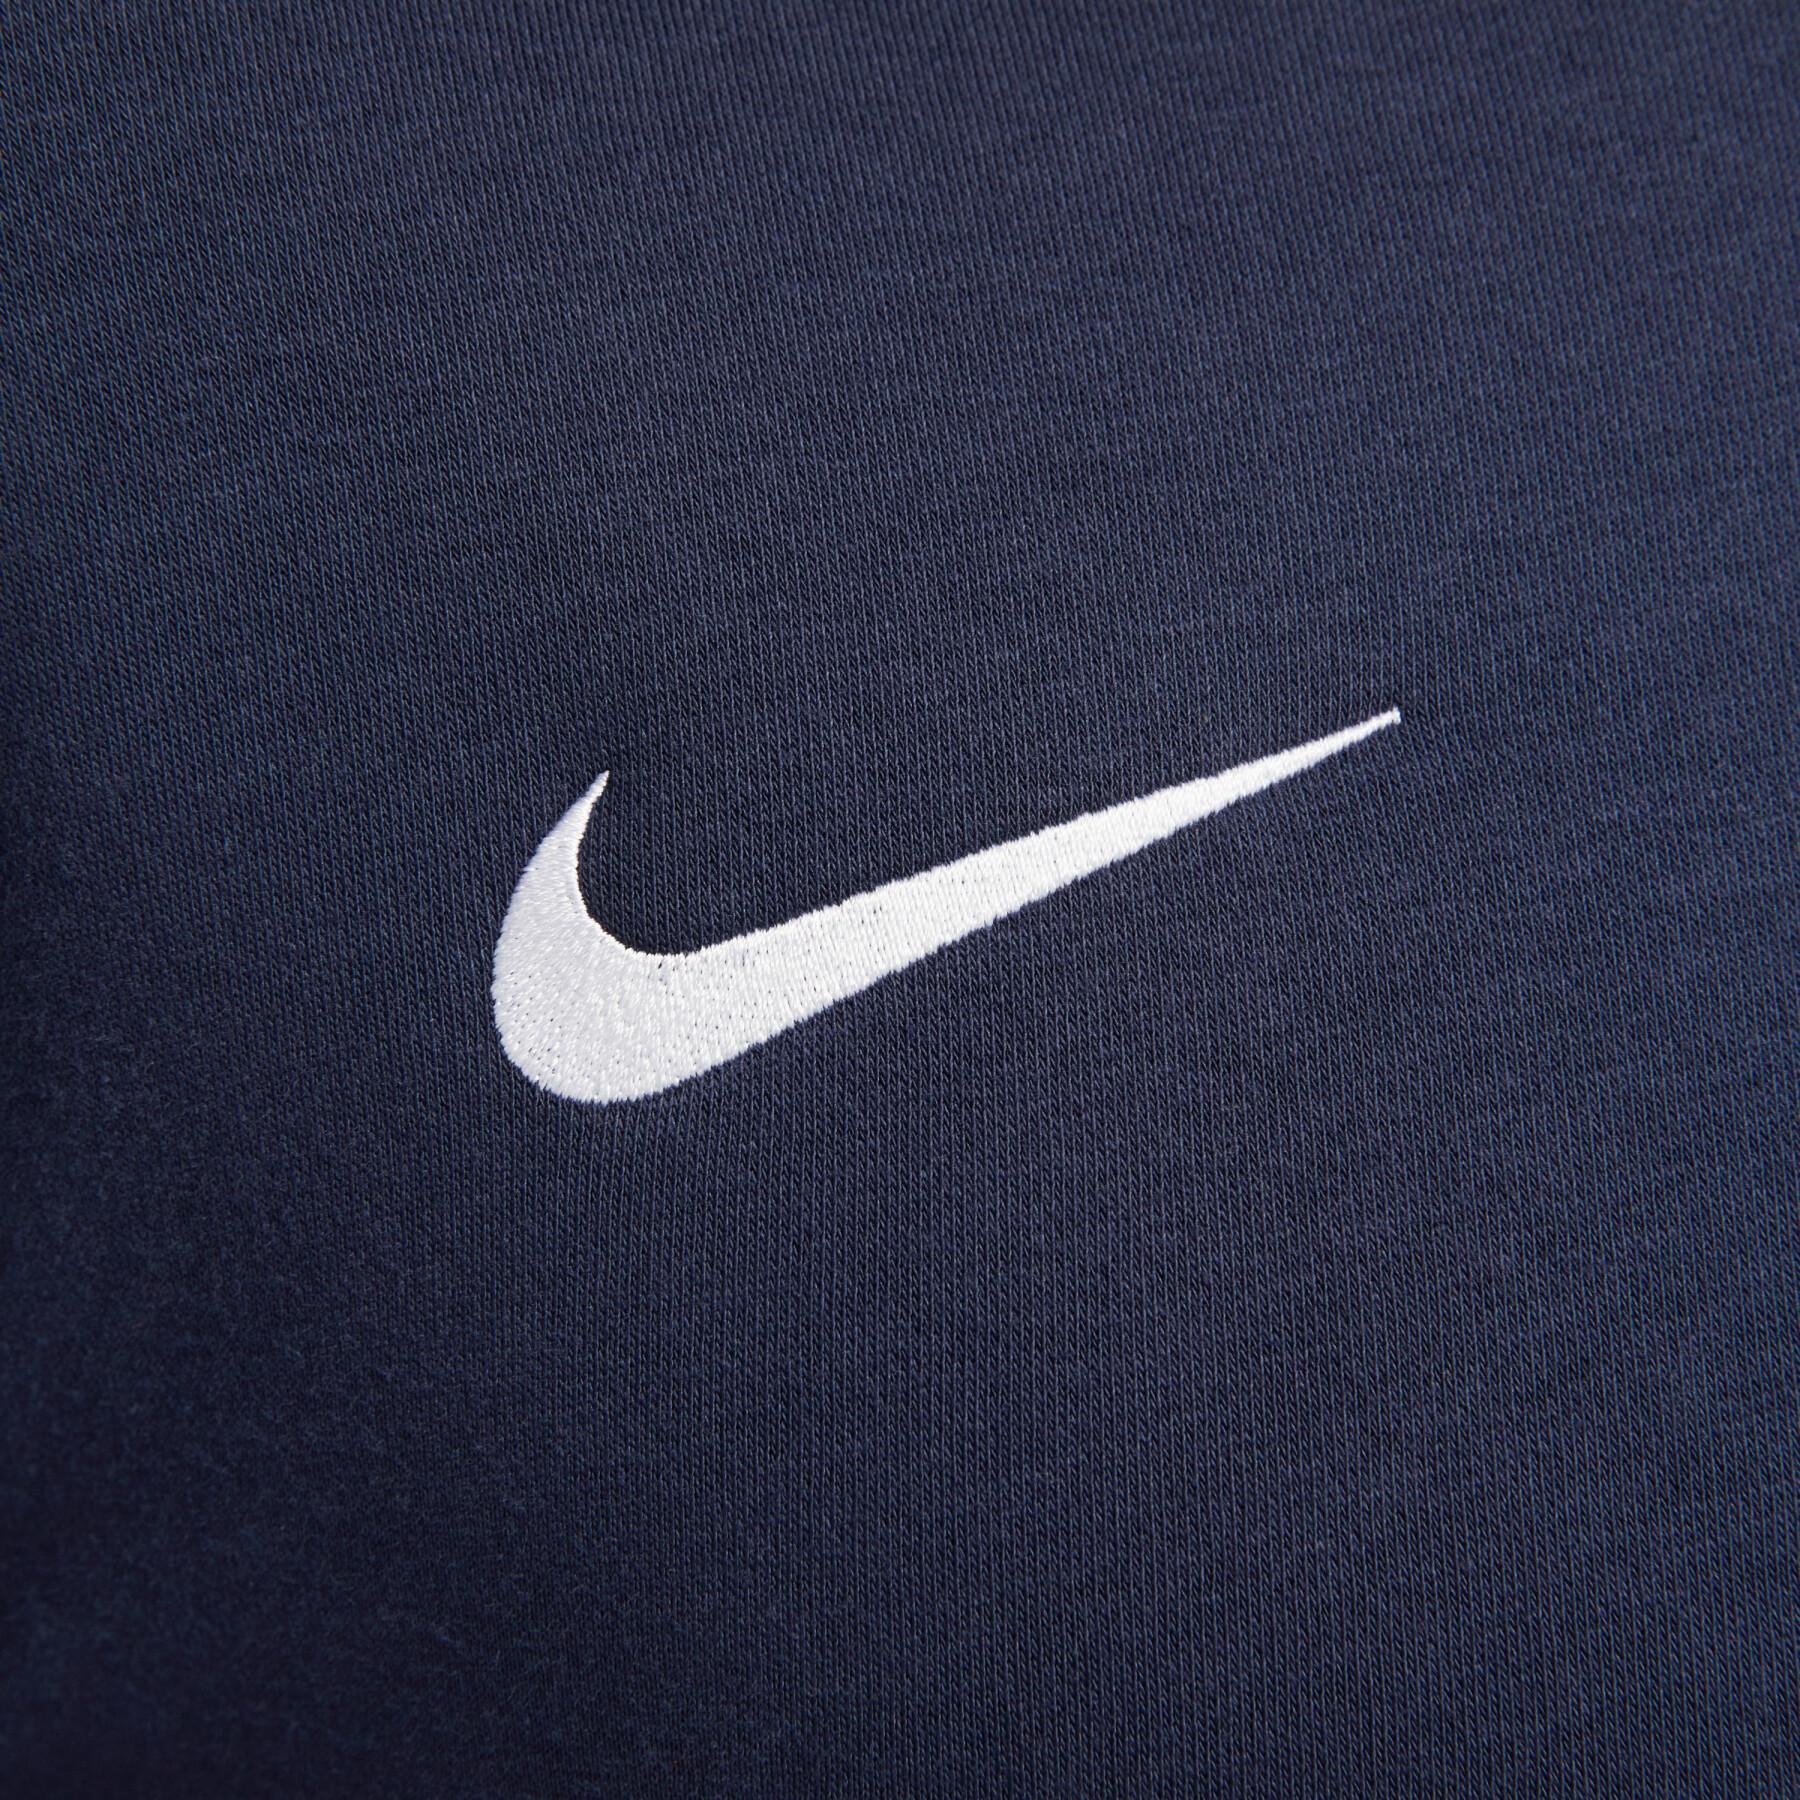 Sweatshirt mit Rundhalsausschnitt Nike Fleece Park20